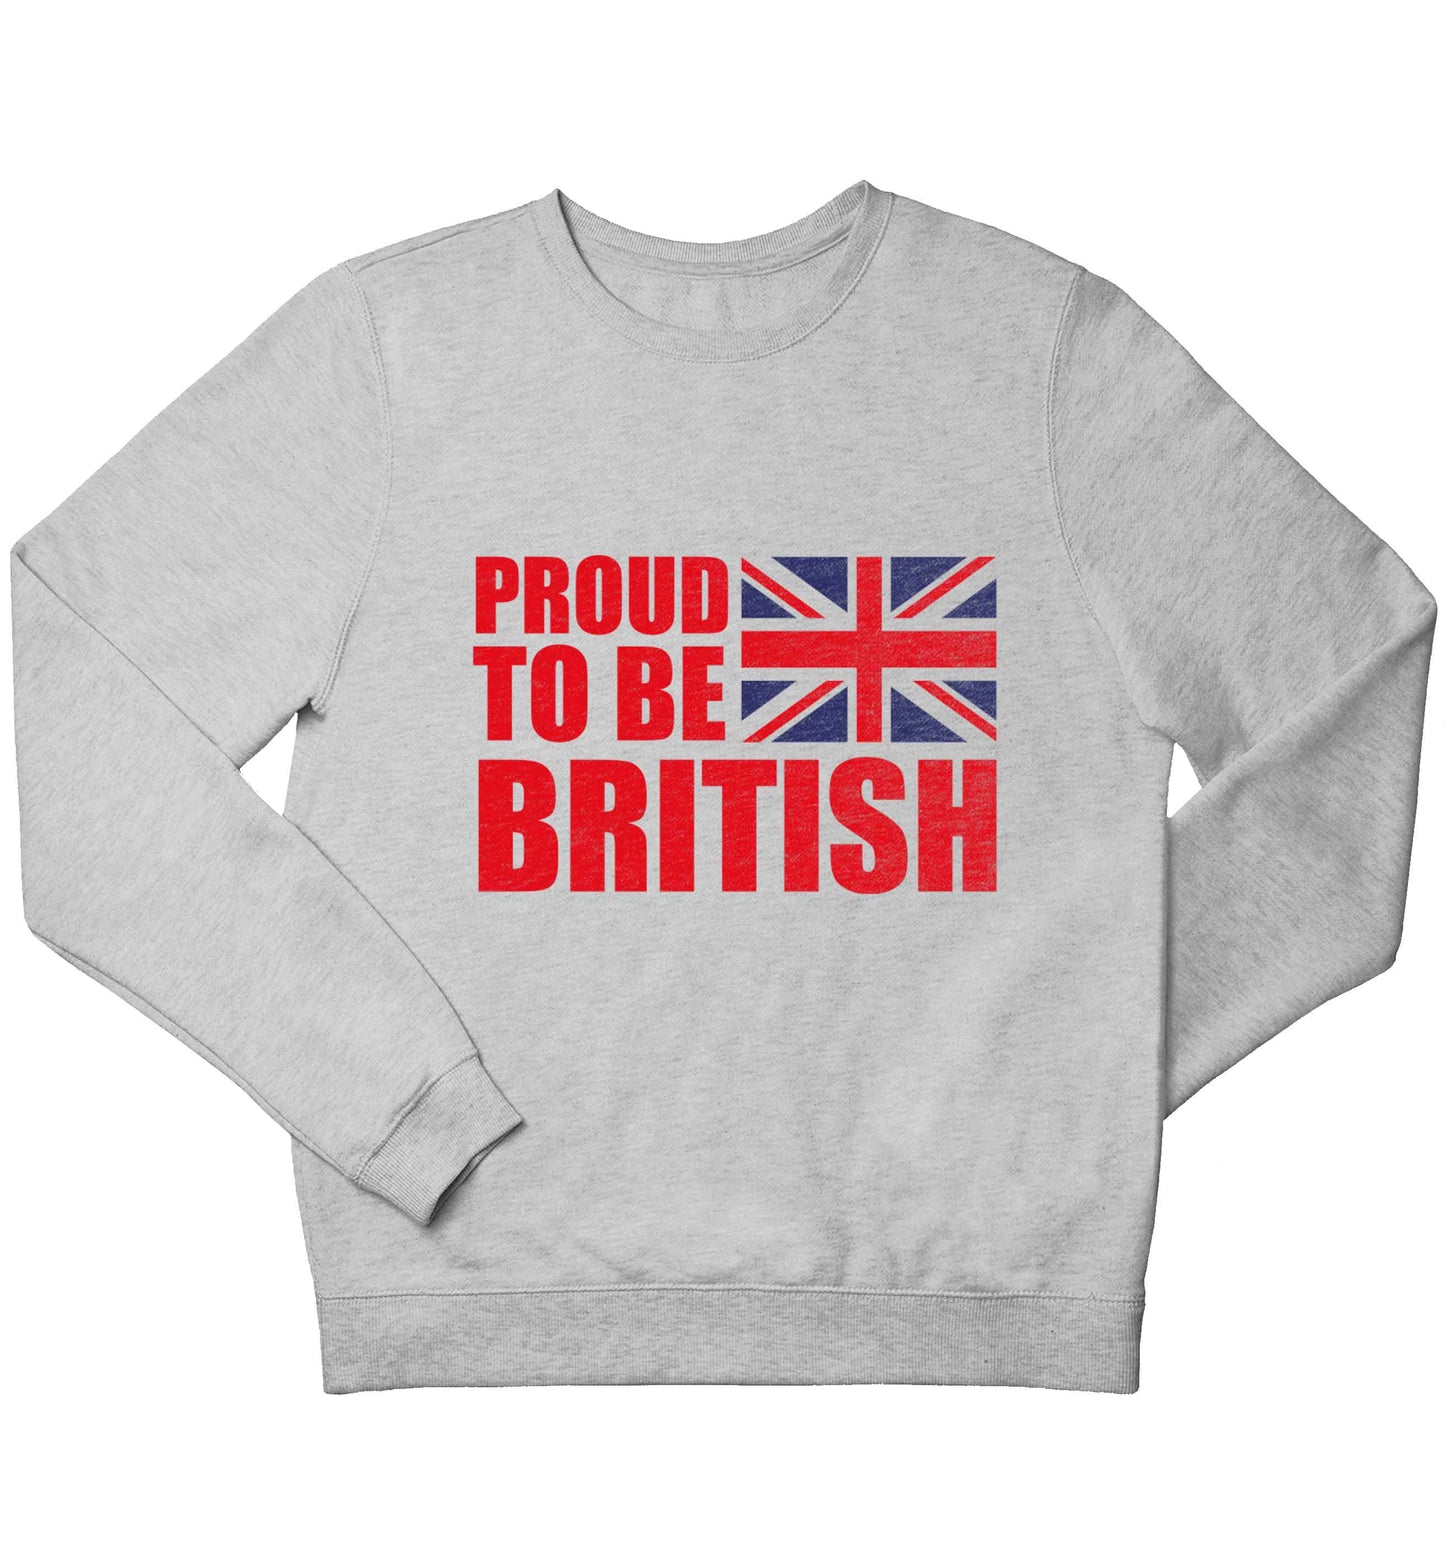 Proud to be British children's grey sweater 12-13 Years